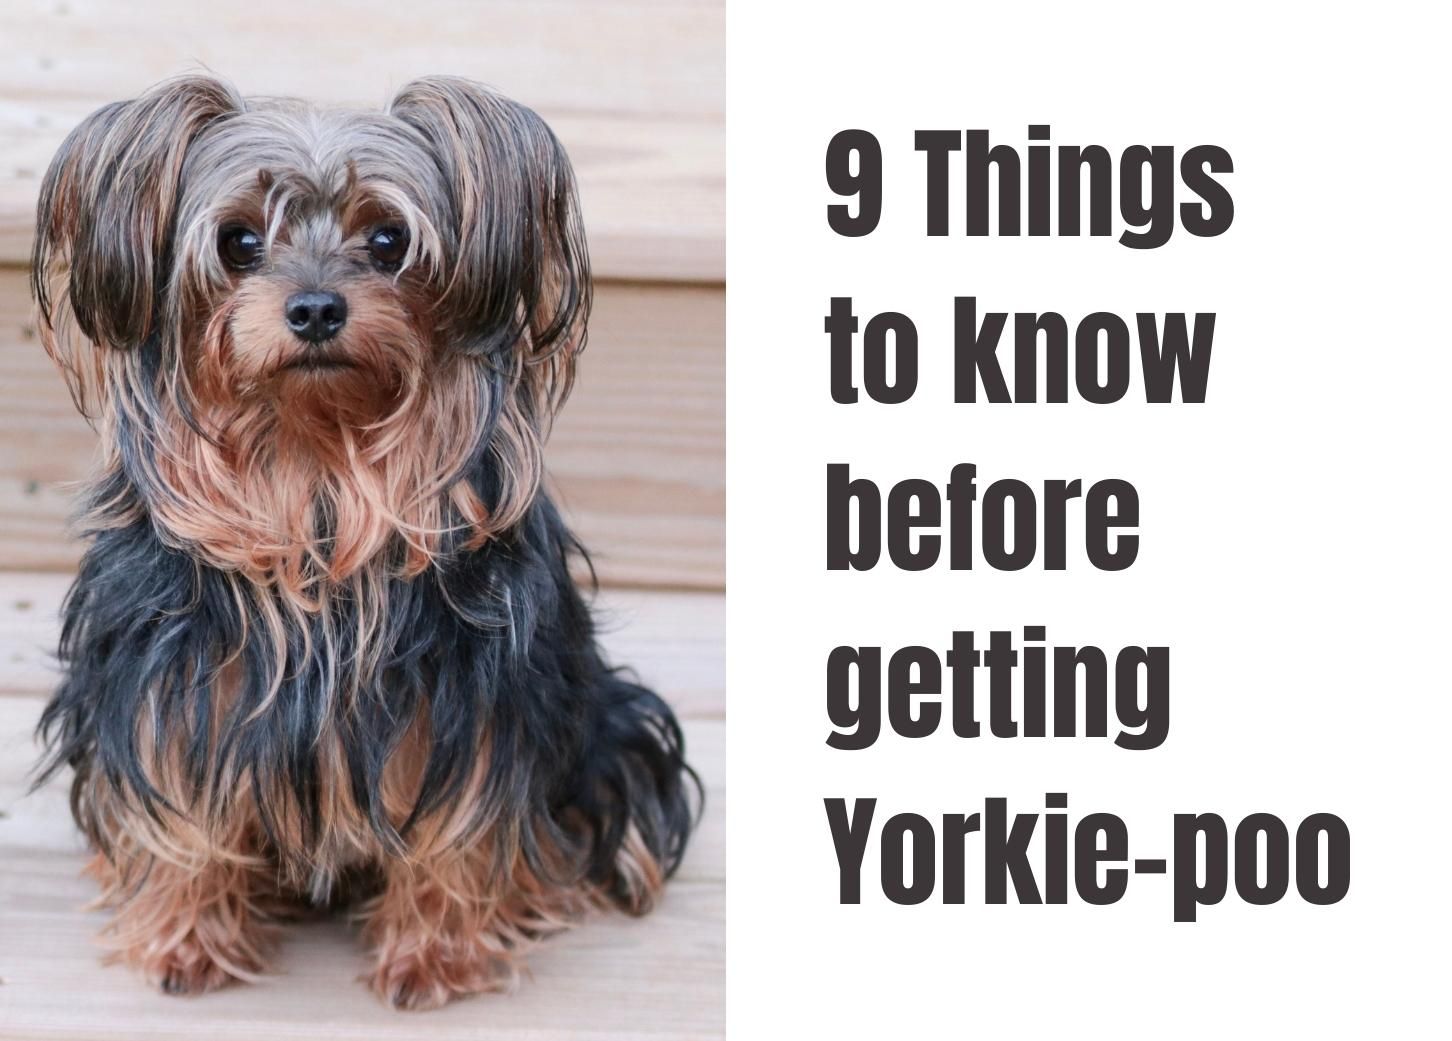 how big do yorkie poo puppies get